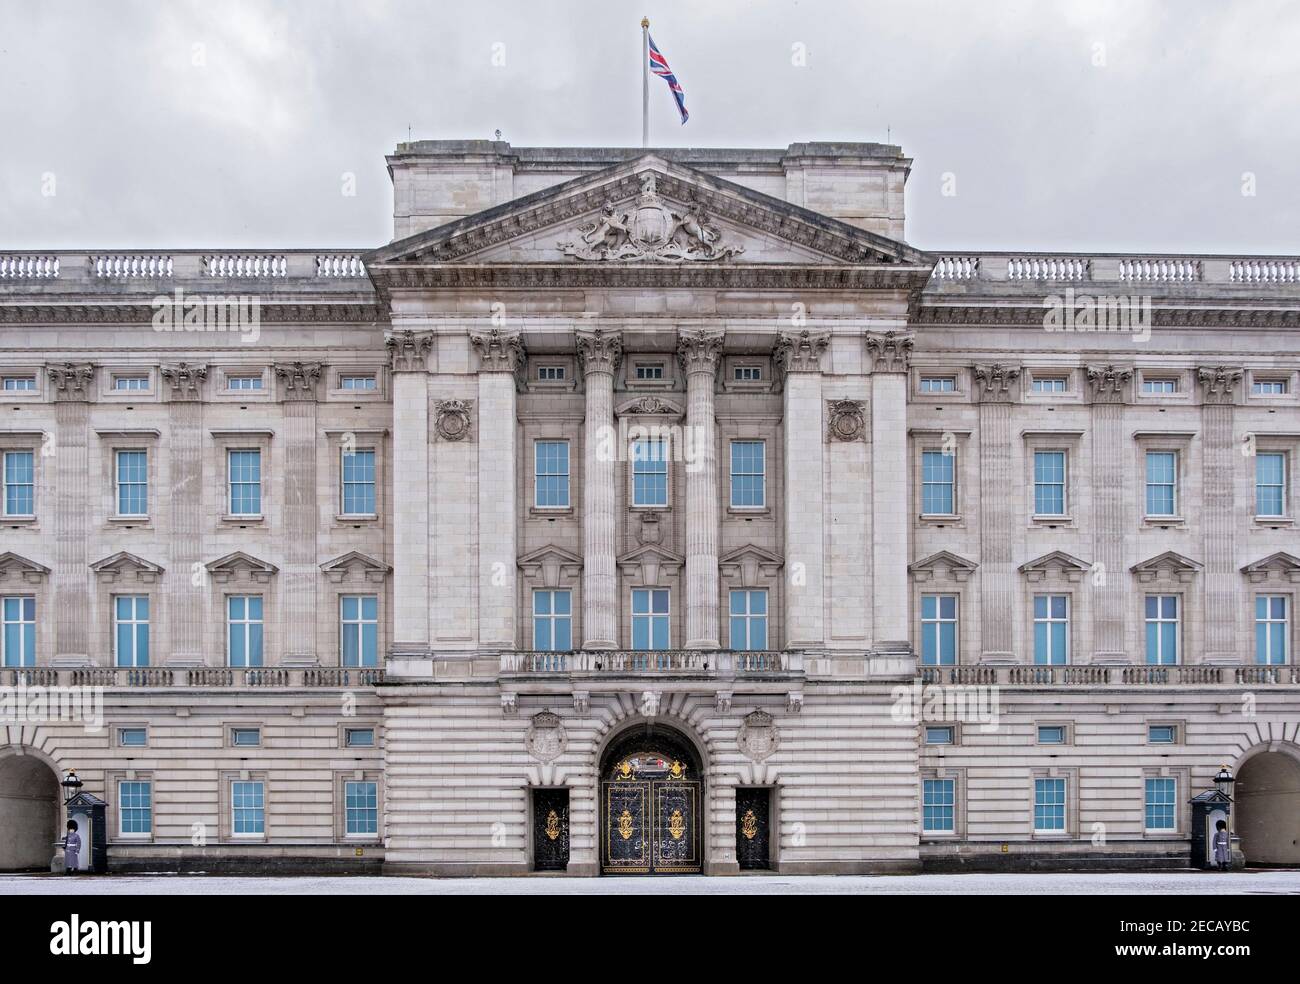 La fachada del Palacio de Buckingham con soldados de Queens Footguard de servicio, nieve de invierno, nubes oscuras, Londres, Reino Unido Foto de stock